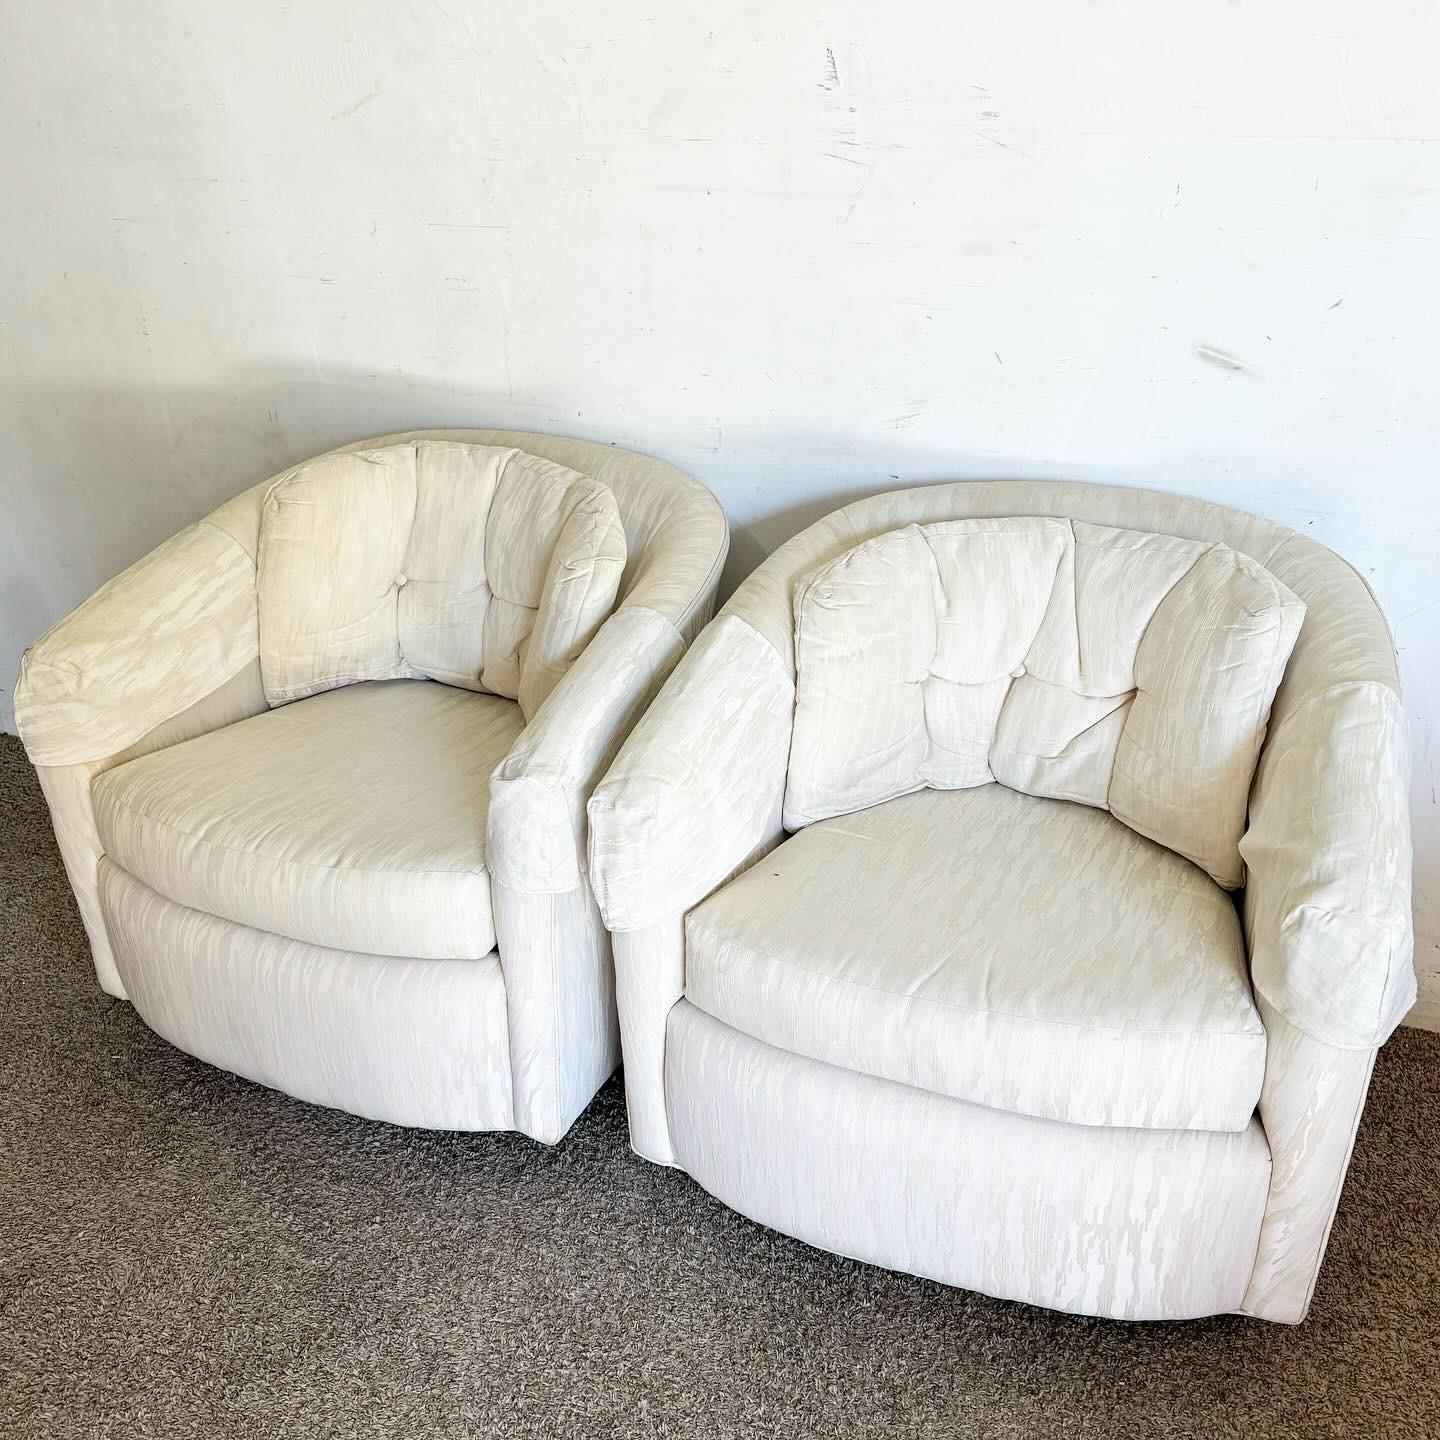 Voici une paire de chaises pivotantes postmodernes en forme de tonneau touffeté, où le touffetage luxueux rencontre la fonctionnalité dynamique du pivotement. Ces chaises offrent une solution d'assise confortable et élégante, parfaite pour tout